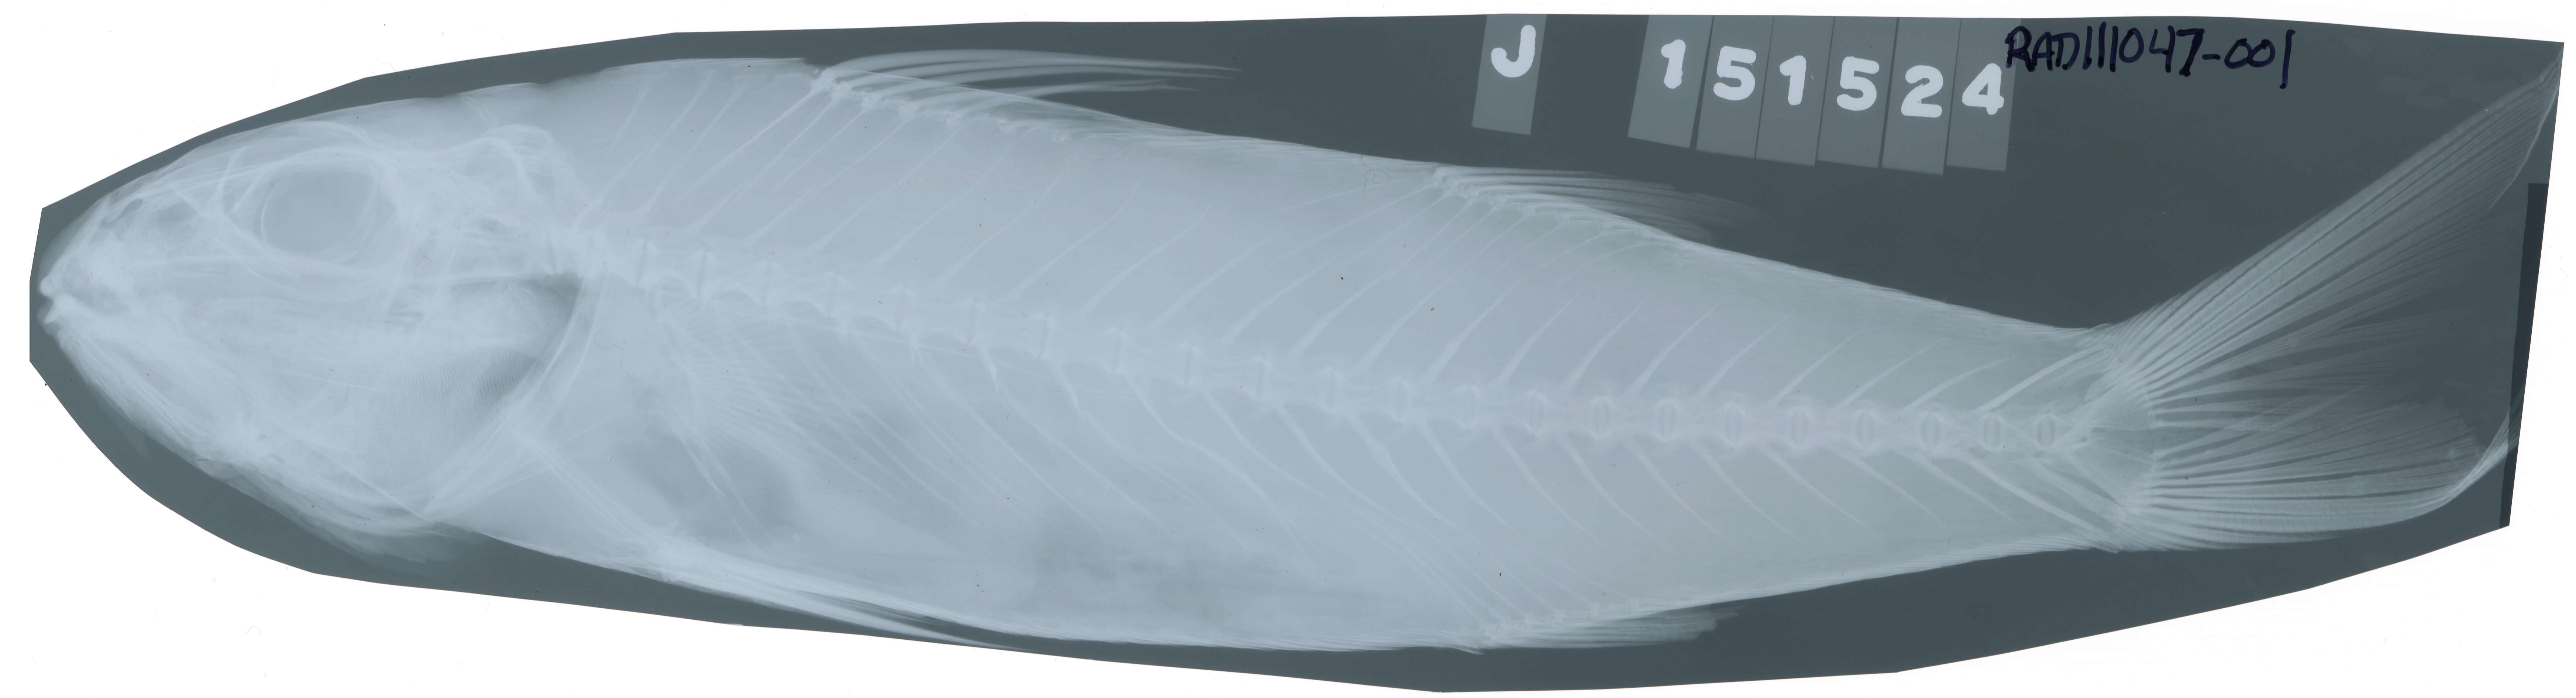 Image of Band-tail goatfish